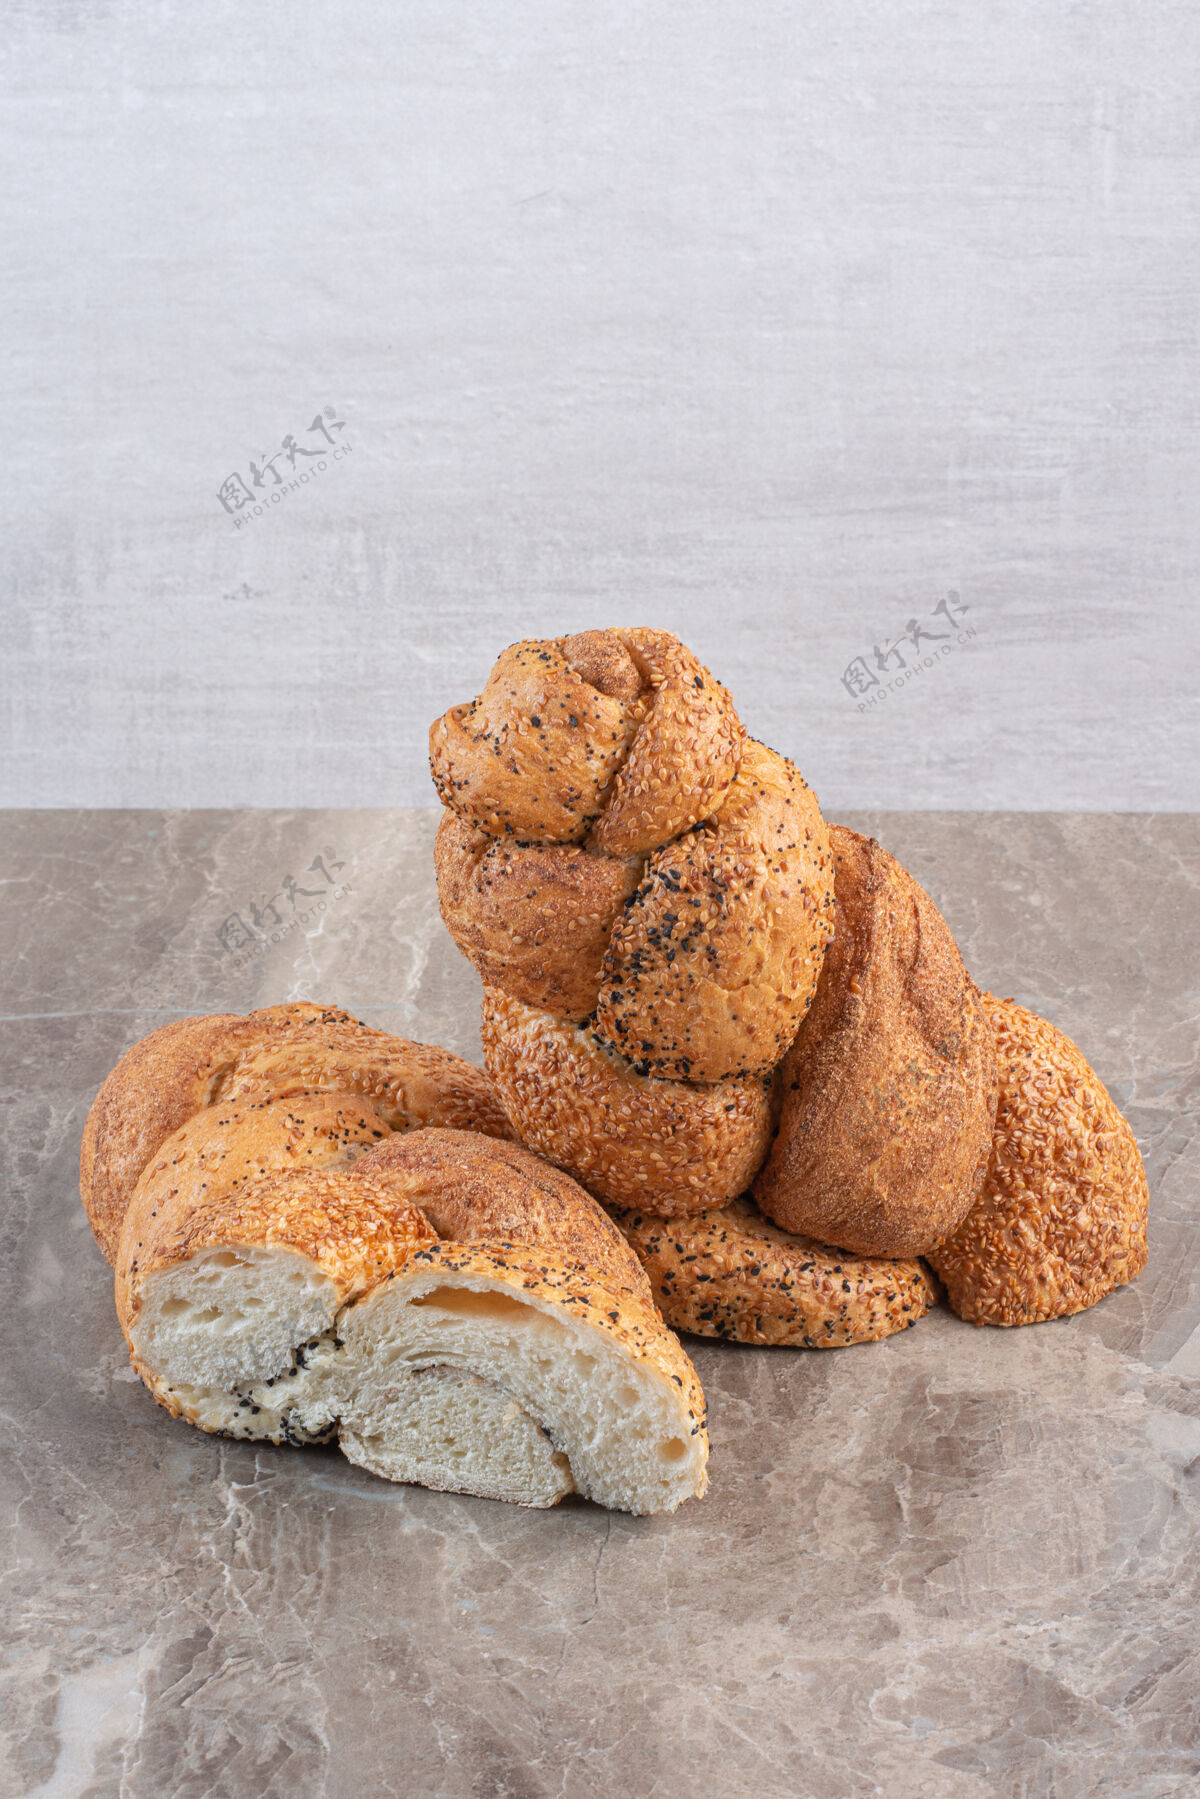 面包在大理石上切成两片的斯特拉西亚面包膳食芝麻烘焙食品